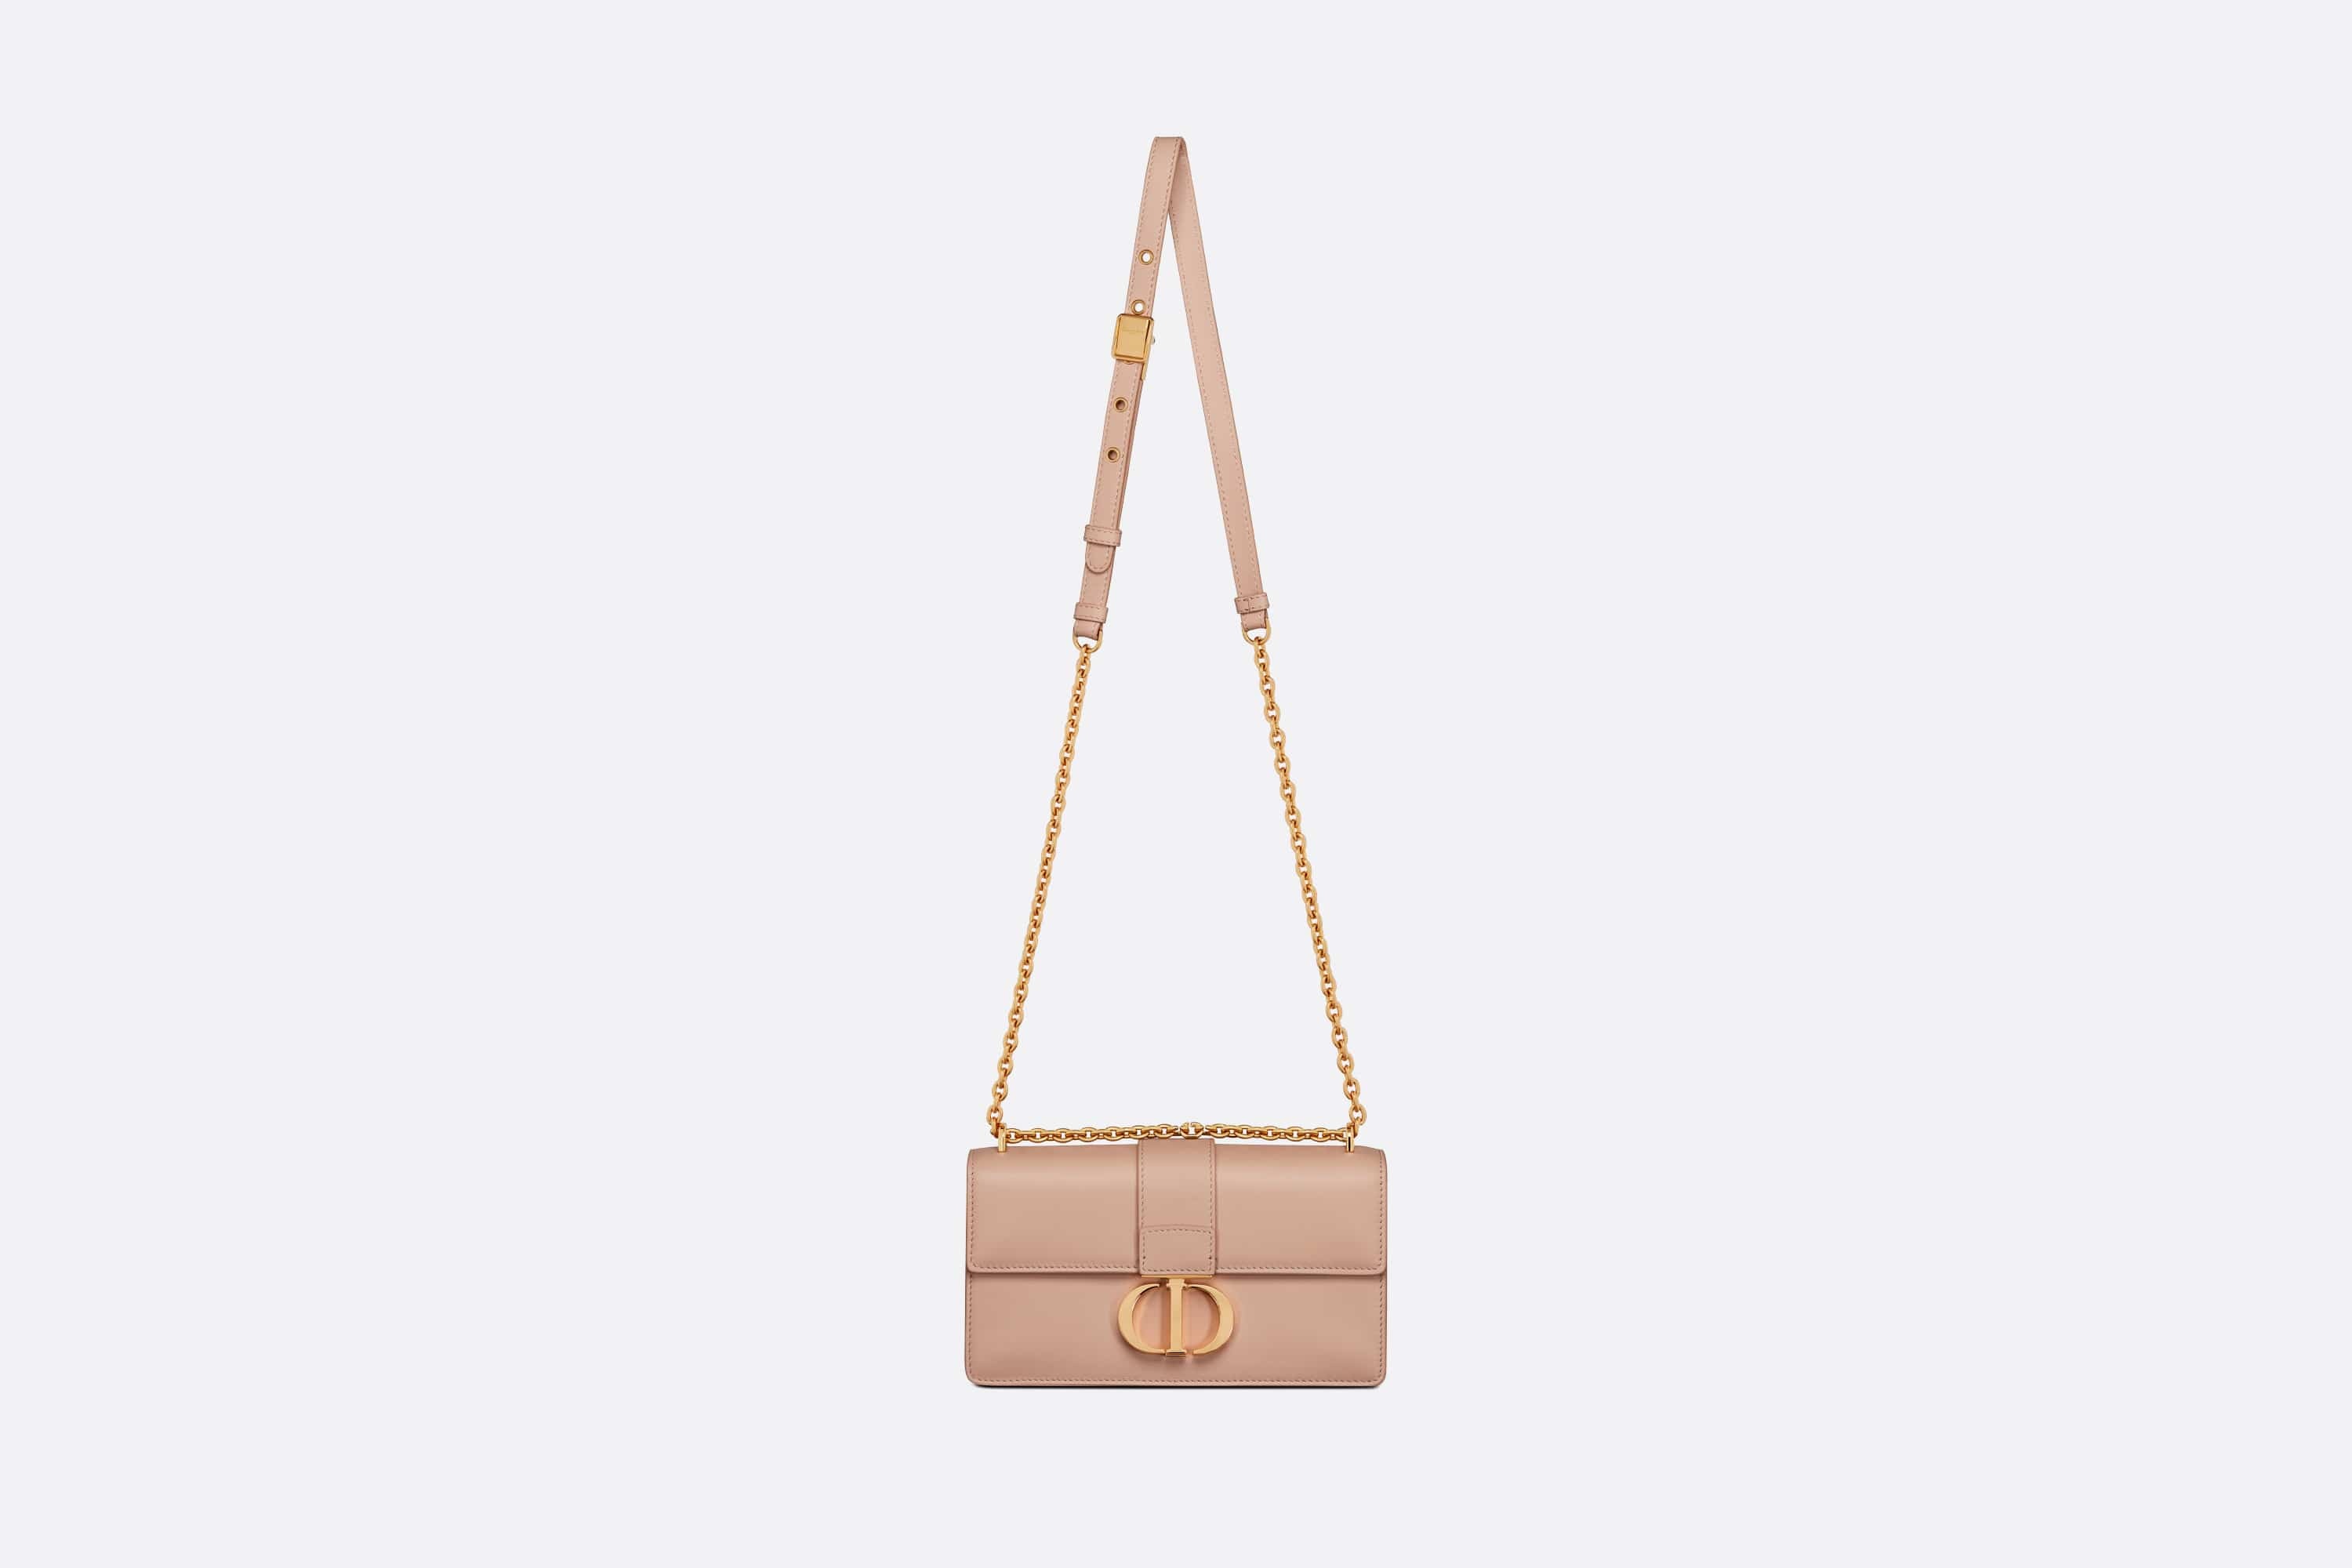 30 Montaigne calfskin bag - Bags - Women's Fashion, DIOR